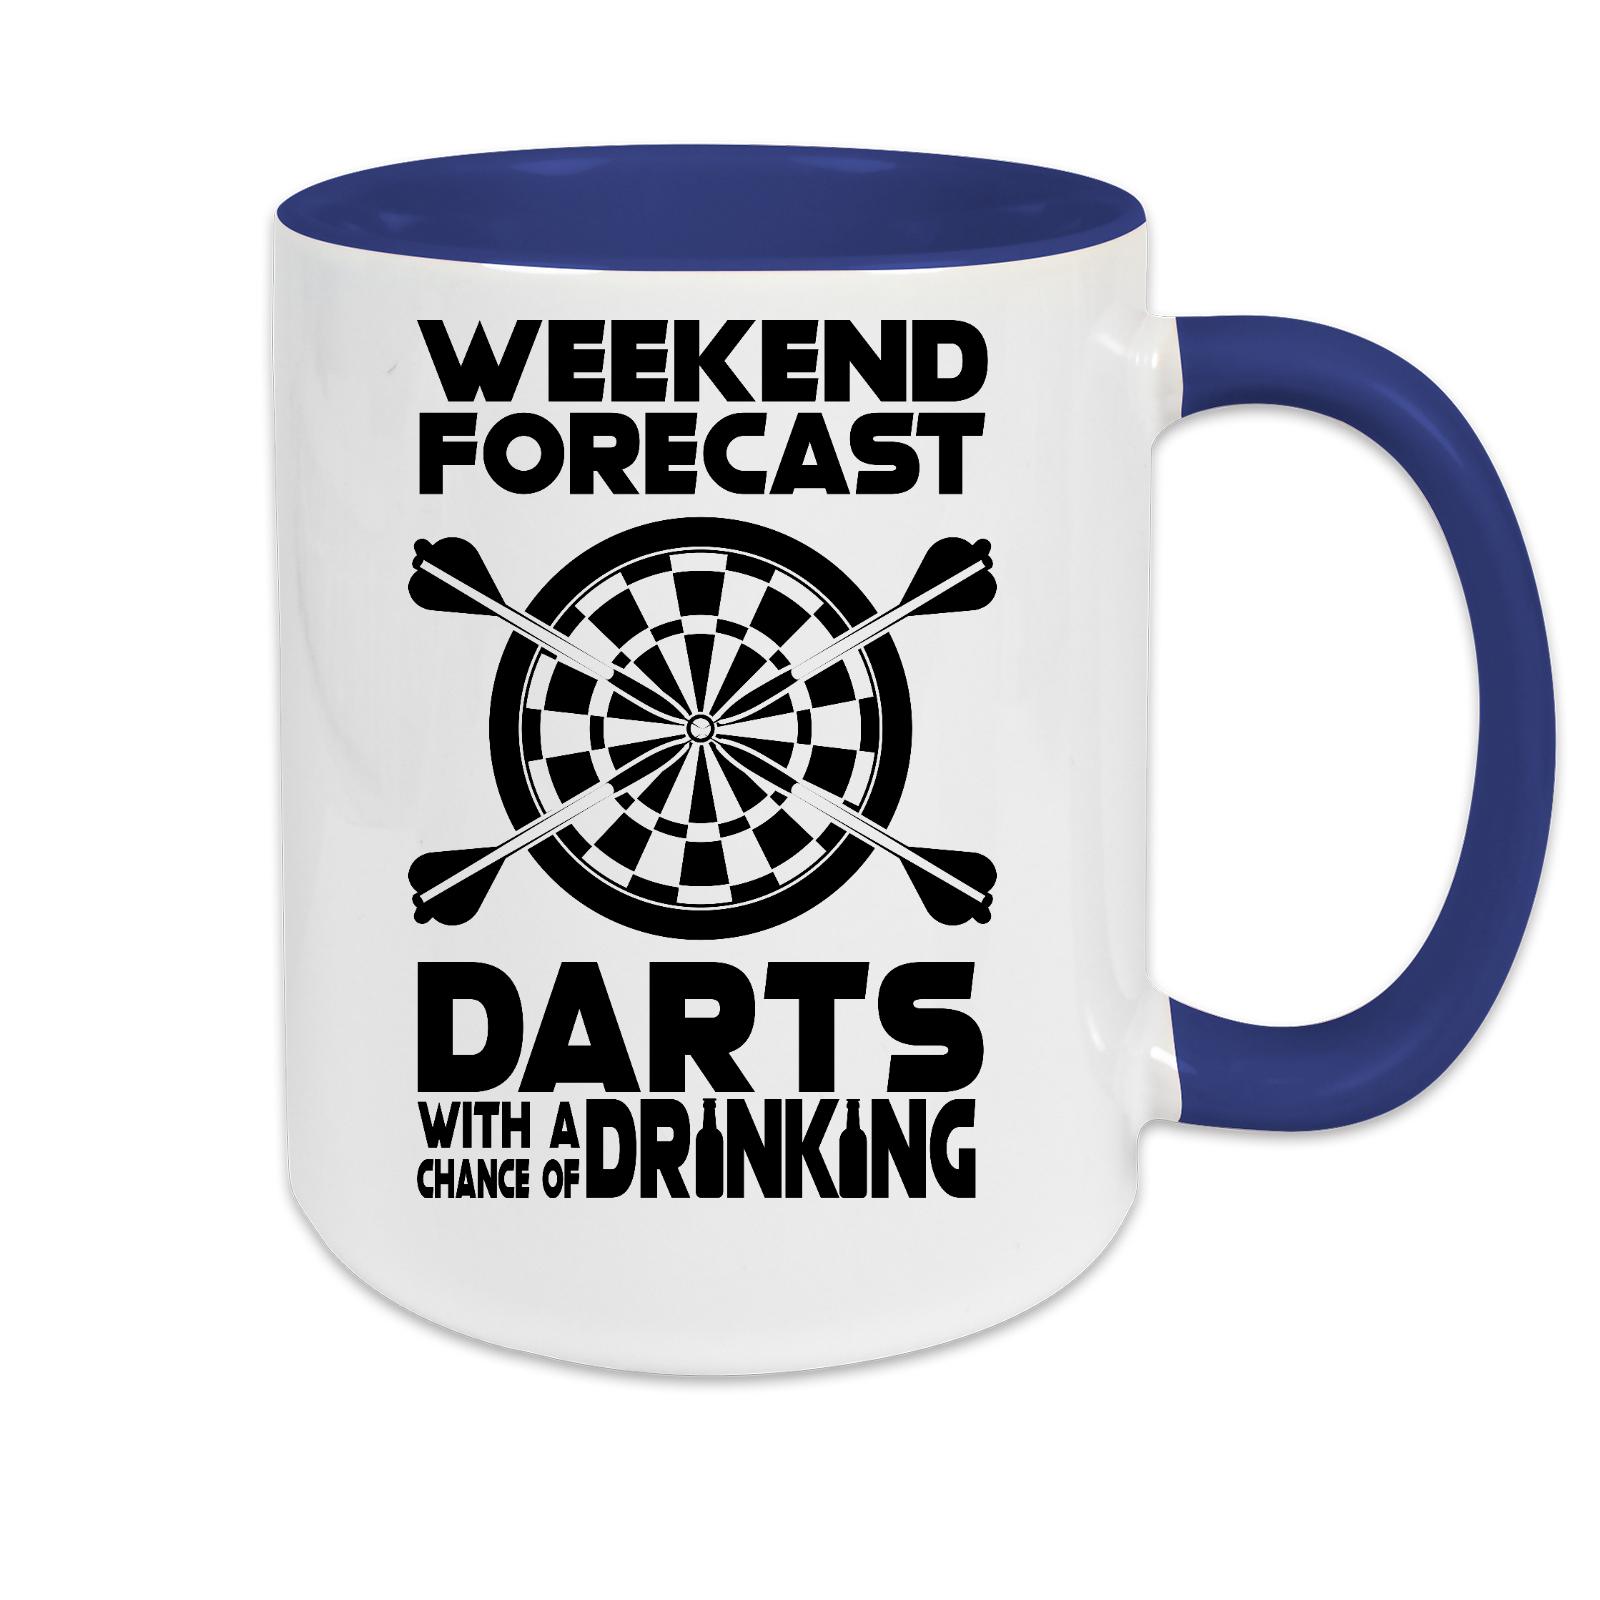 Tasse zweifarbig Darts Weekend Forecast Darts